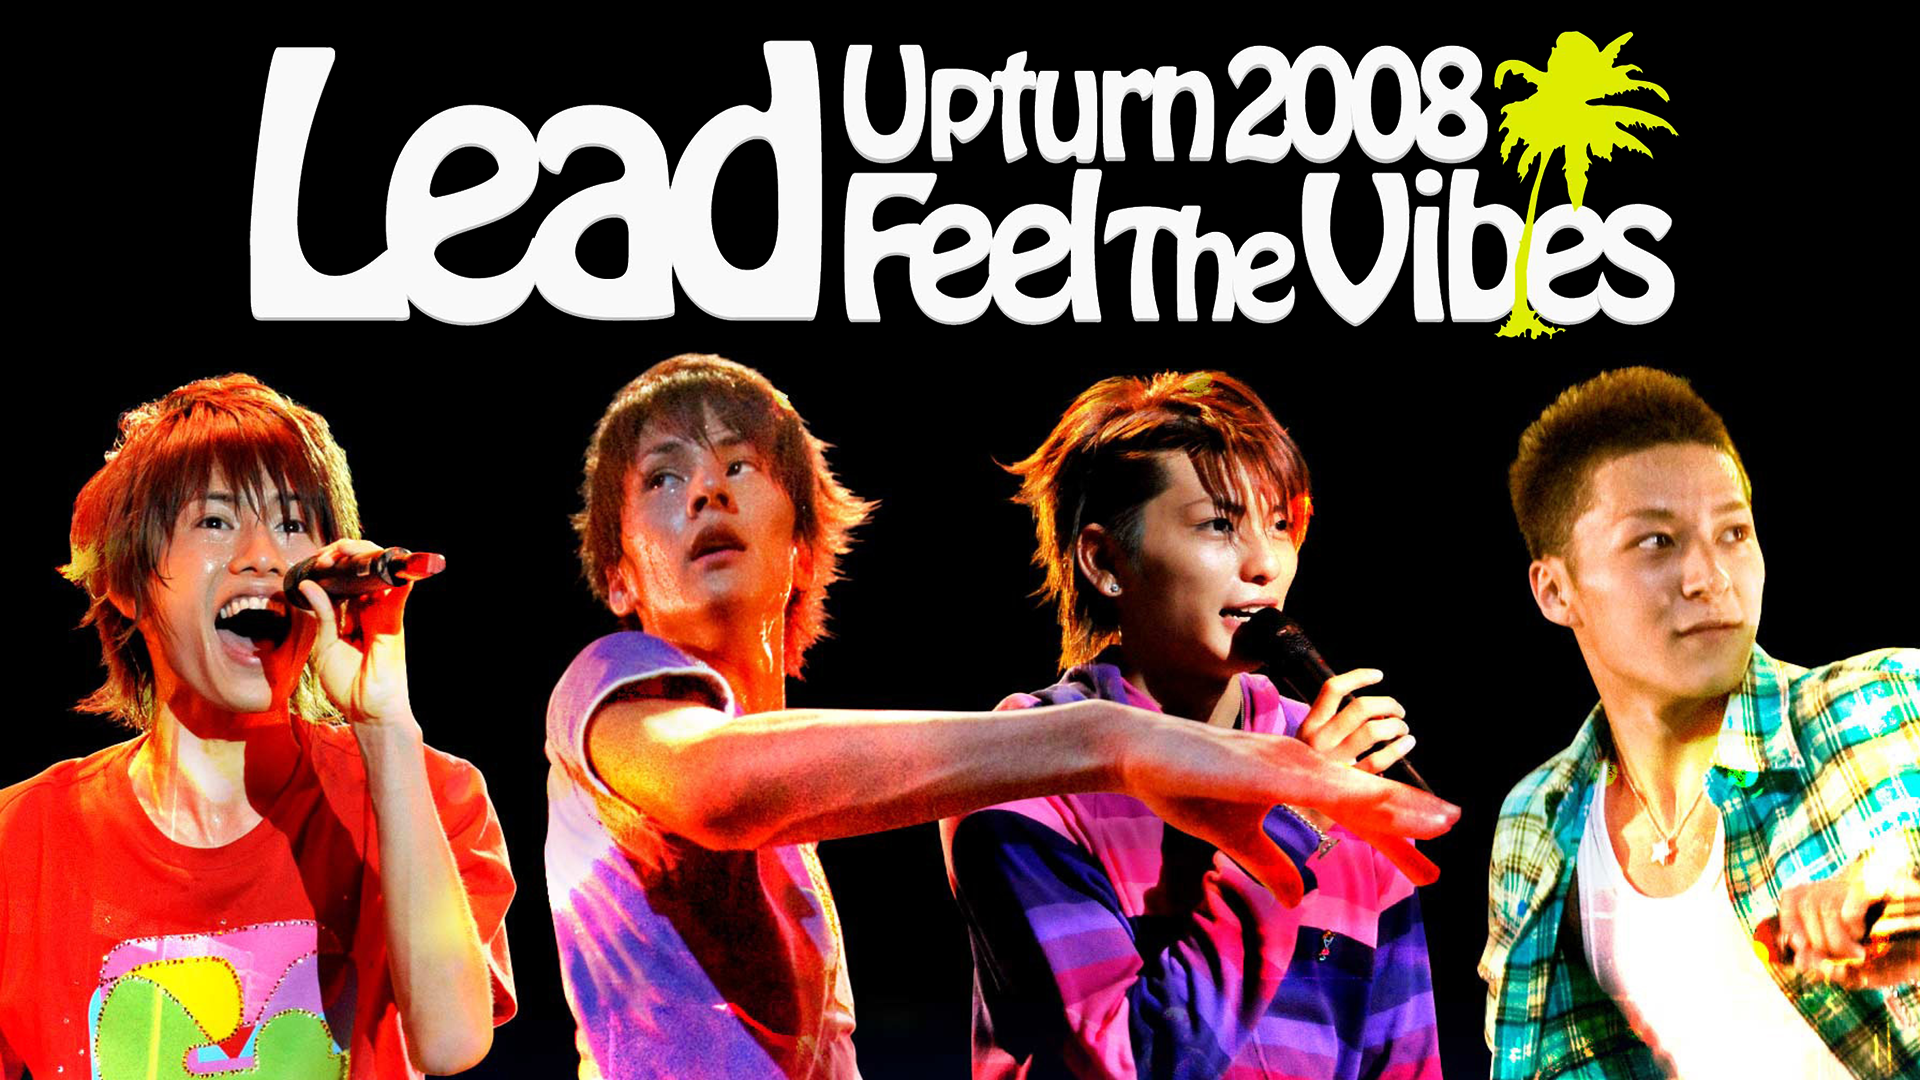 Lead Upturn 2008 -Feel The Vibes-(音楽・アイドル / 2008) - 動画配信 | U-NEXT  31日間無料トライアル